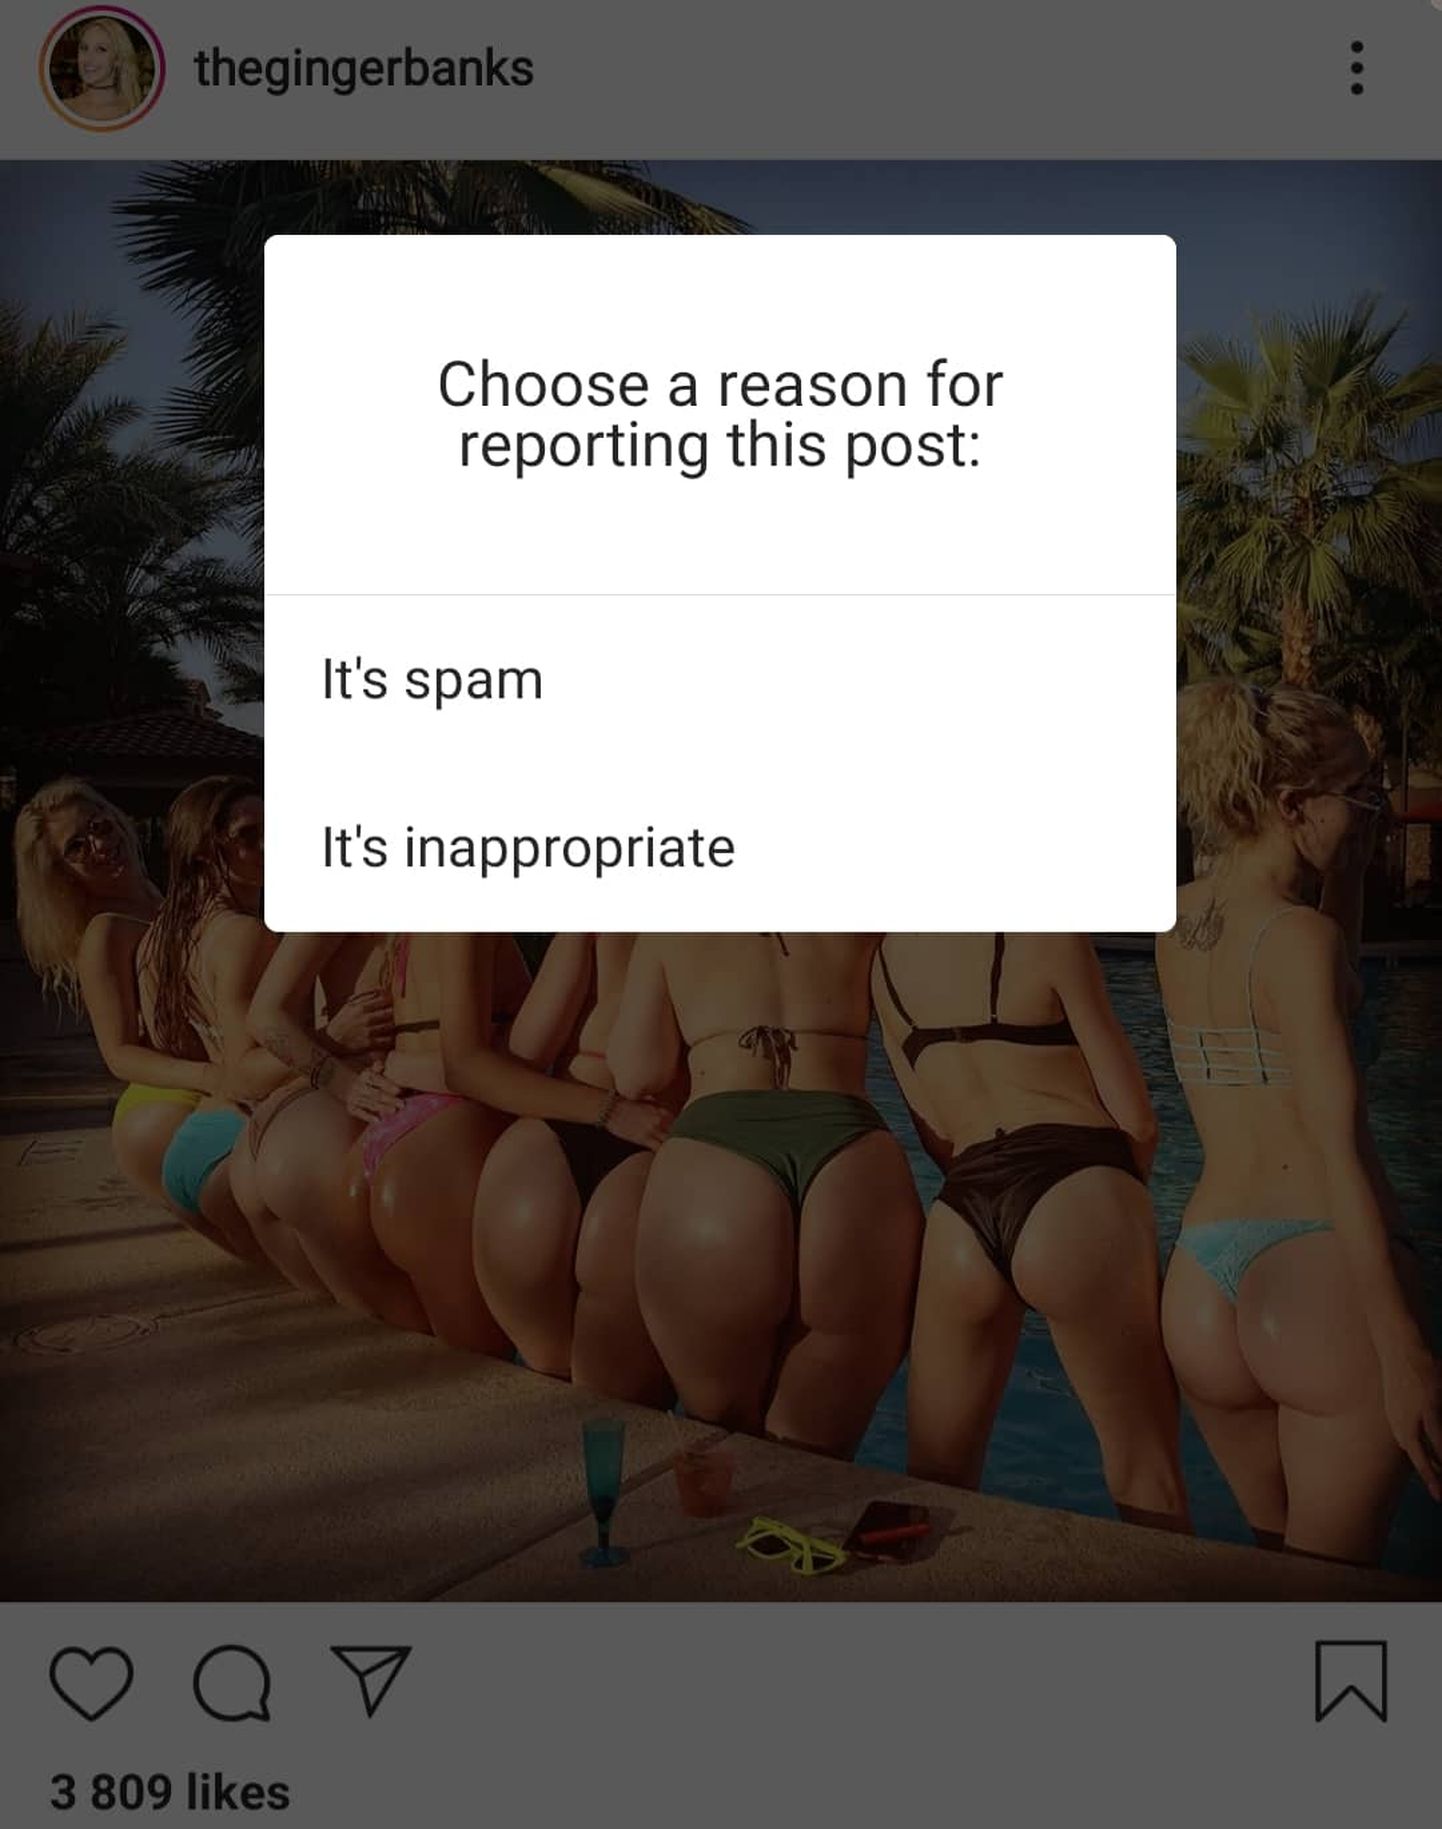 Pornostaaridele peetakse Instagramis sõda.